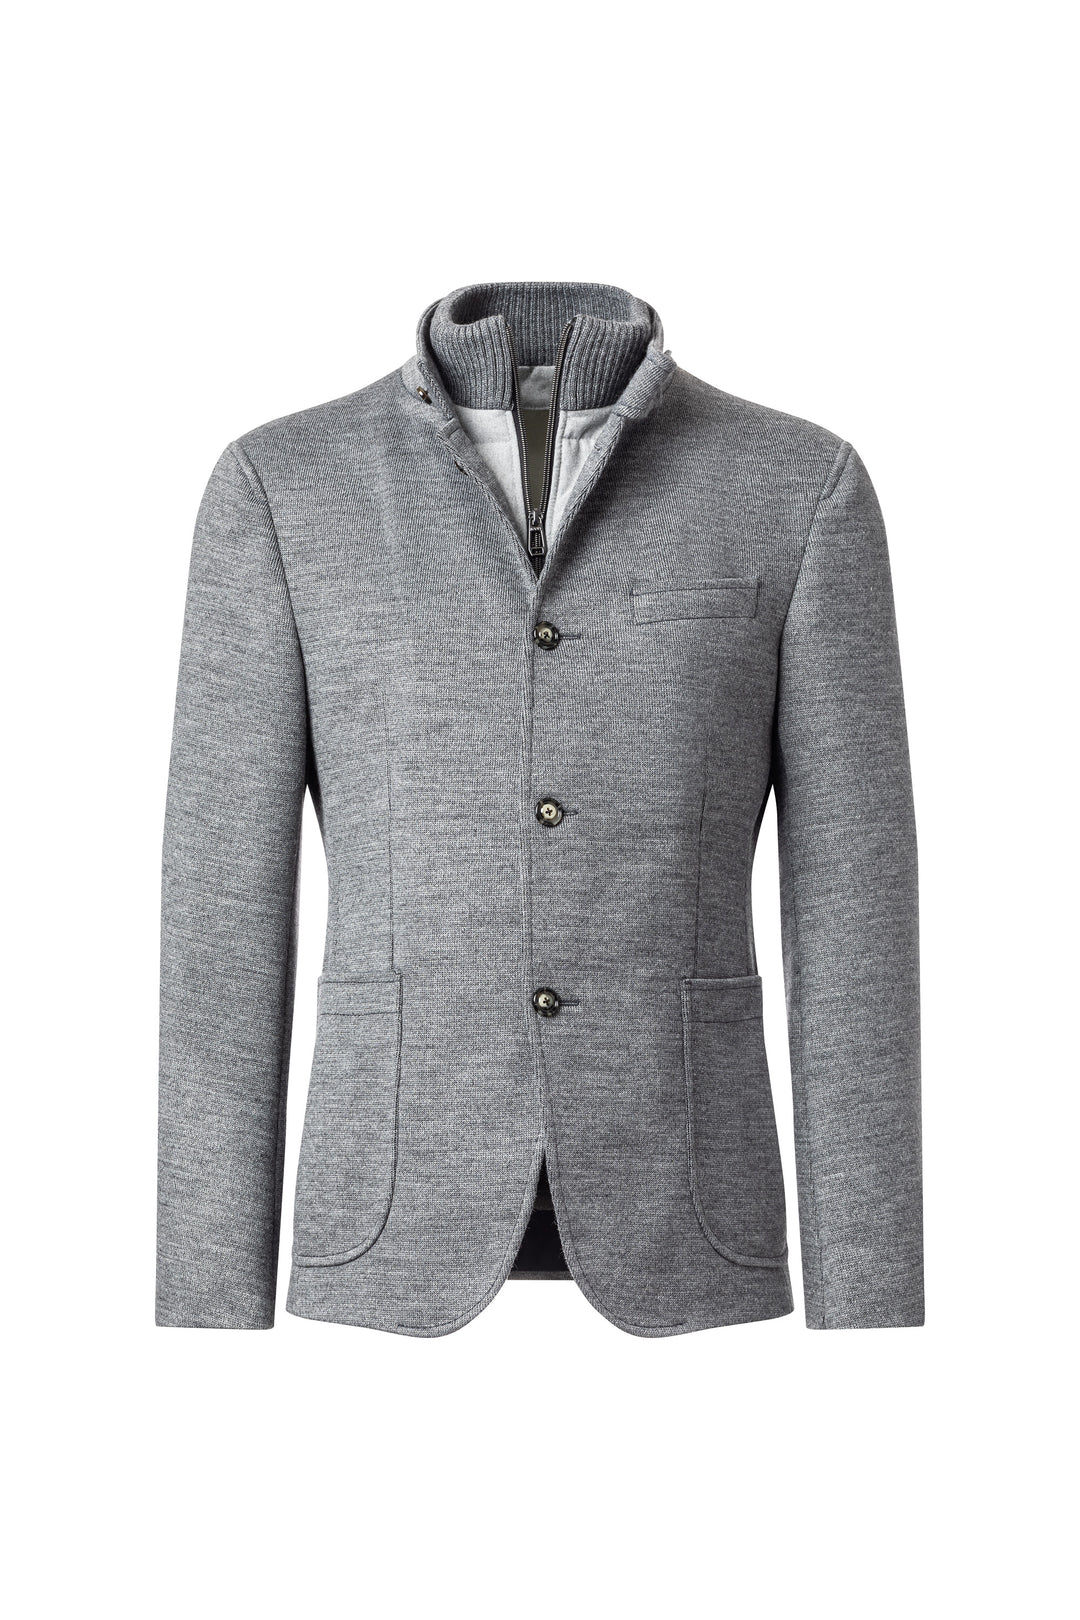 Hectar-J Knit Field Coat in Grey